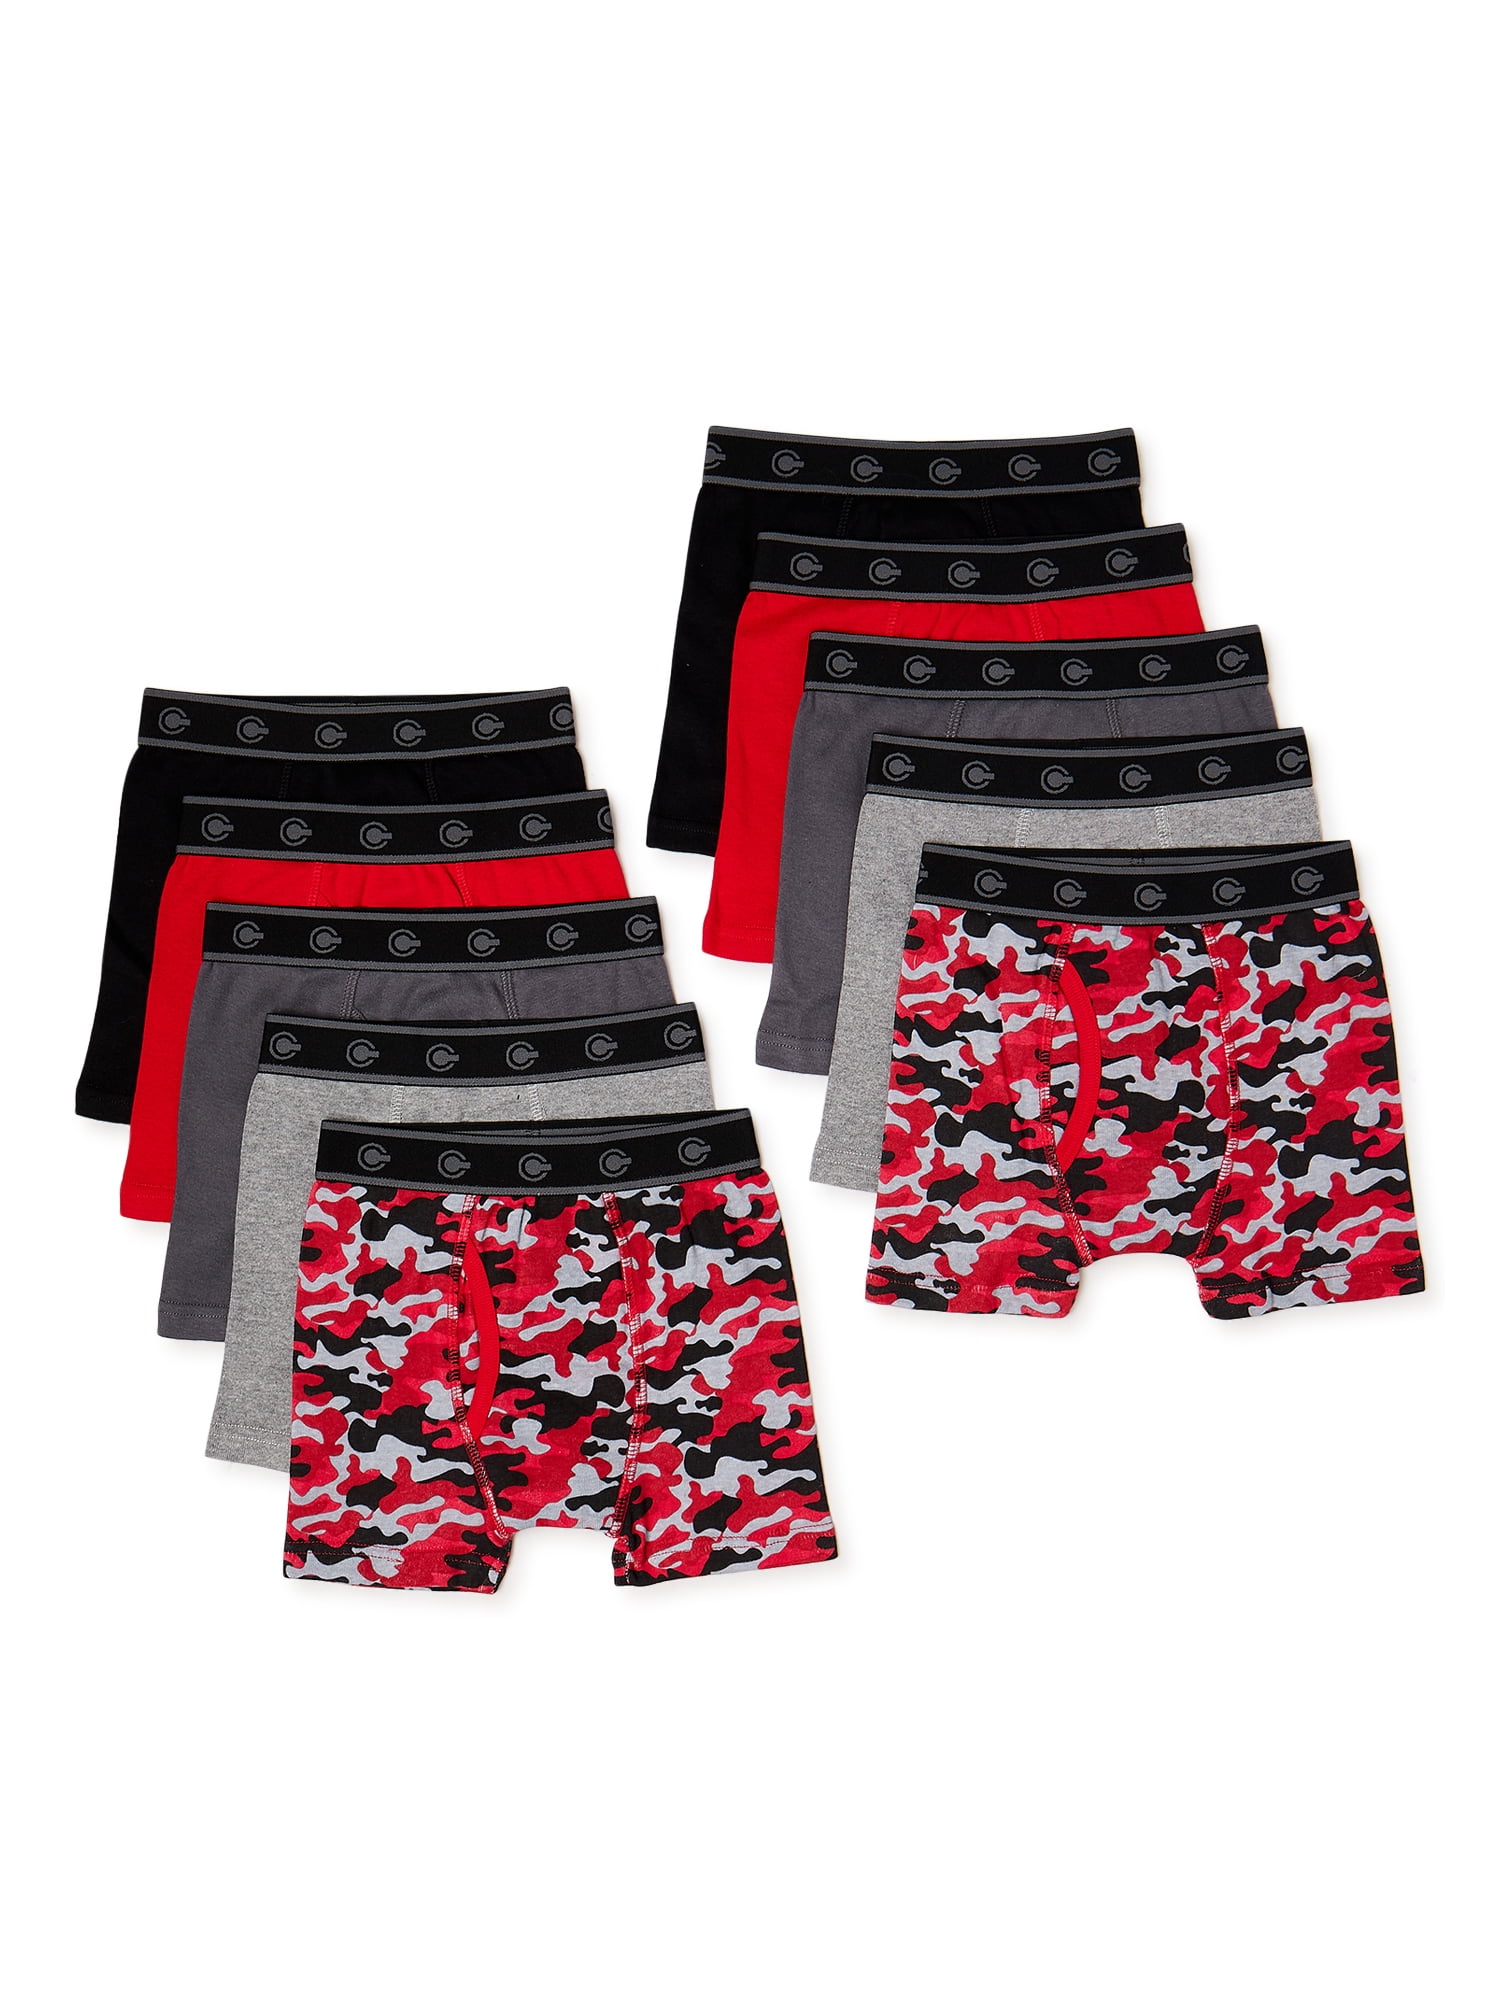 Fortnite Boys Underwear, 4 Pack Boxer Briefs Sizes 8-12 